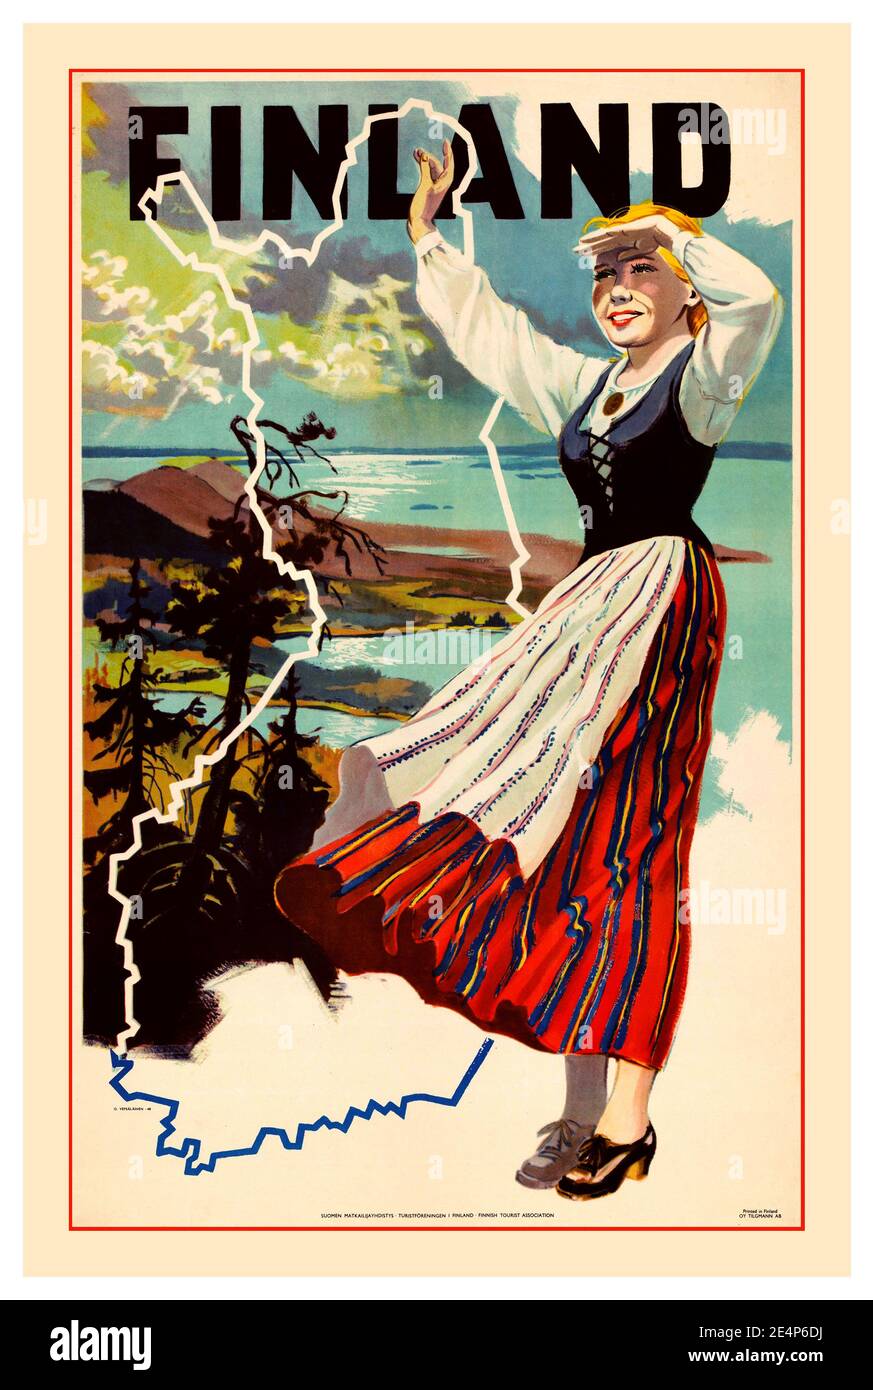 FINLAND Vintage 1940er Retro-Reise-Poster mit finnisch blonde Mädchen In traditioneller Nationaltracht mit Karte & Schärengarten abbildung der inseln dahinter Stockfoto